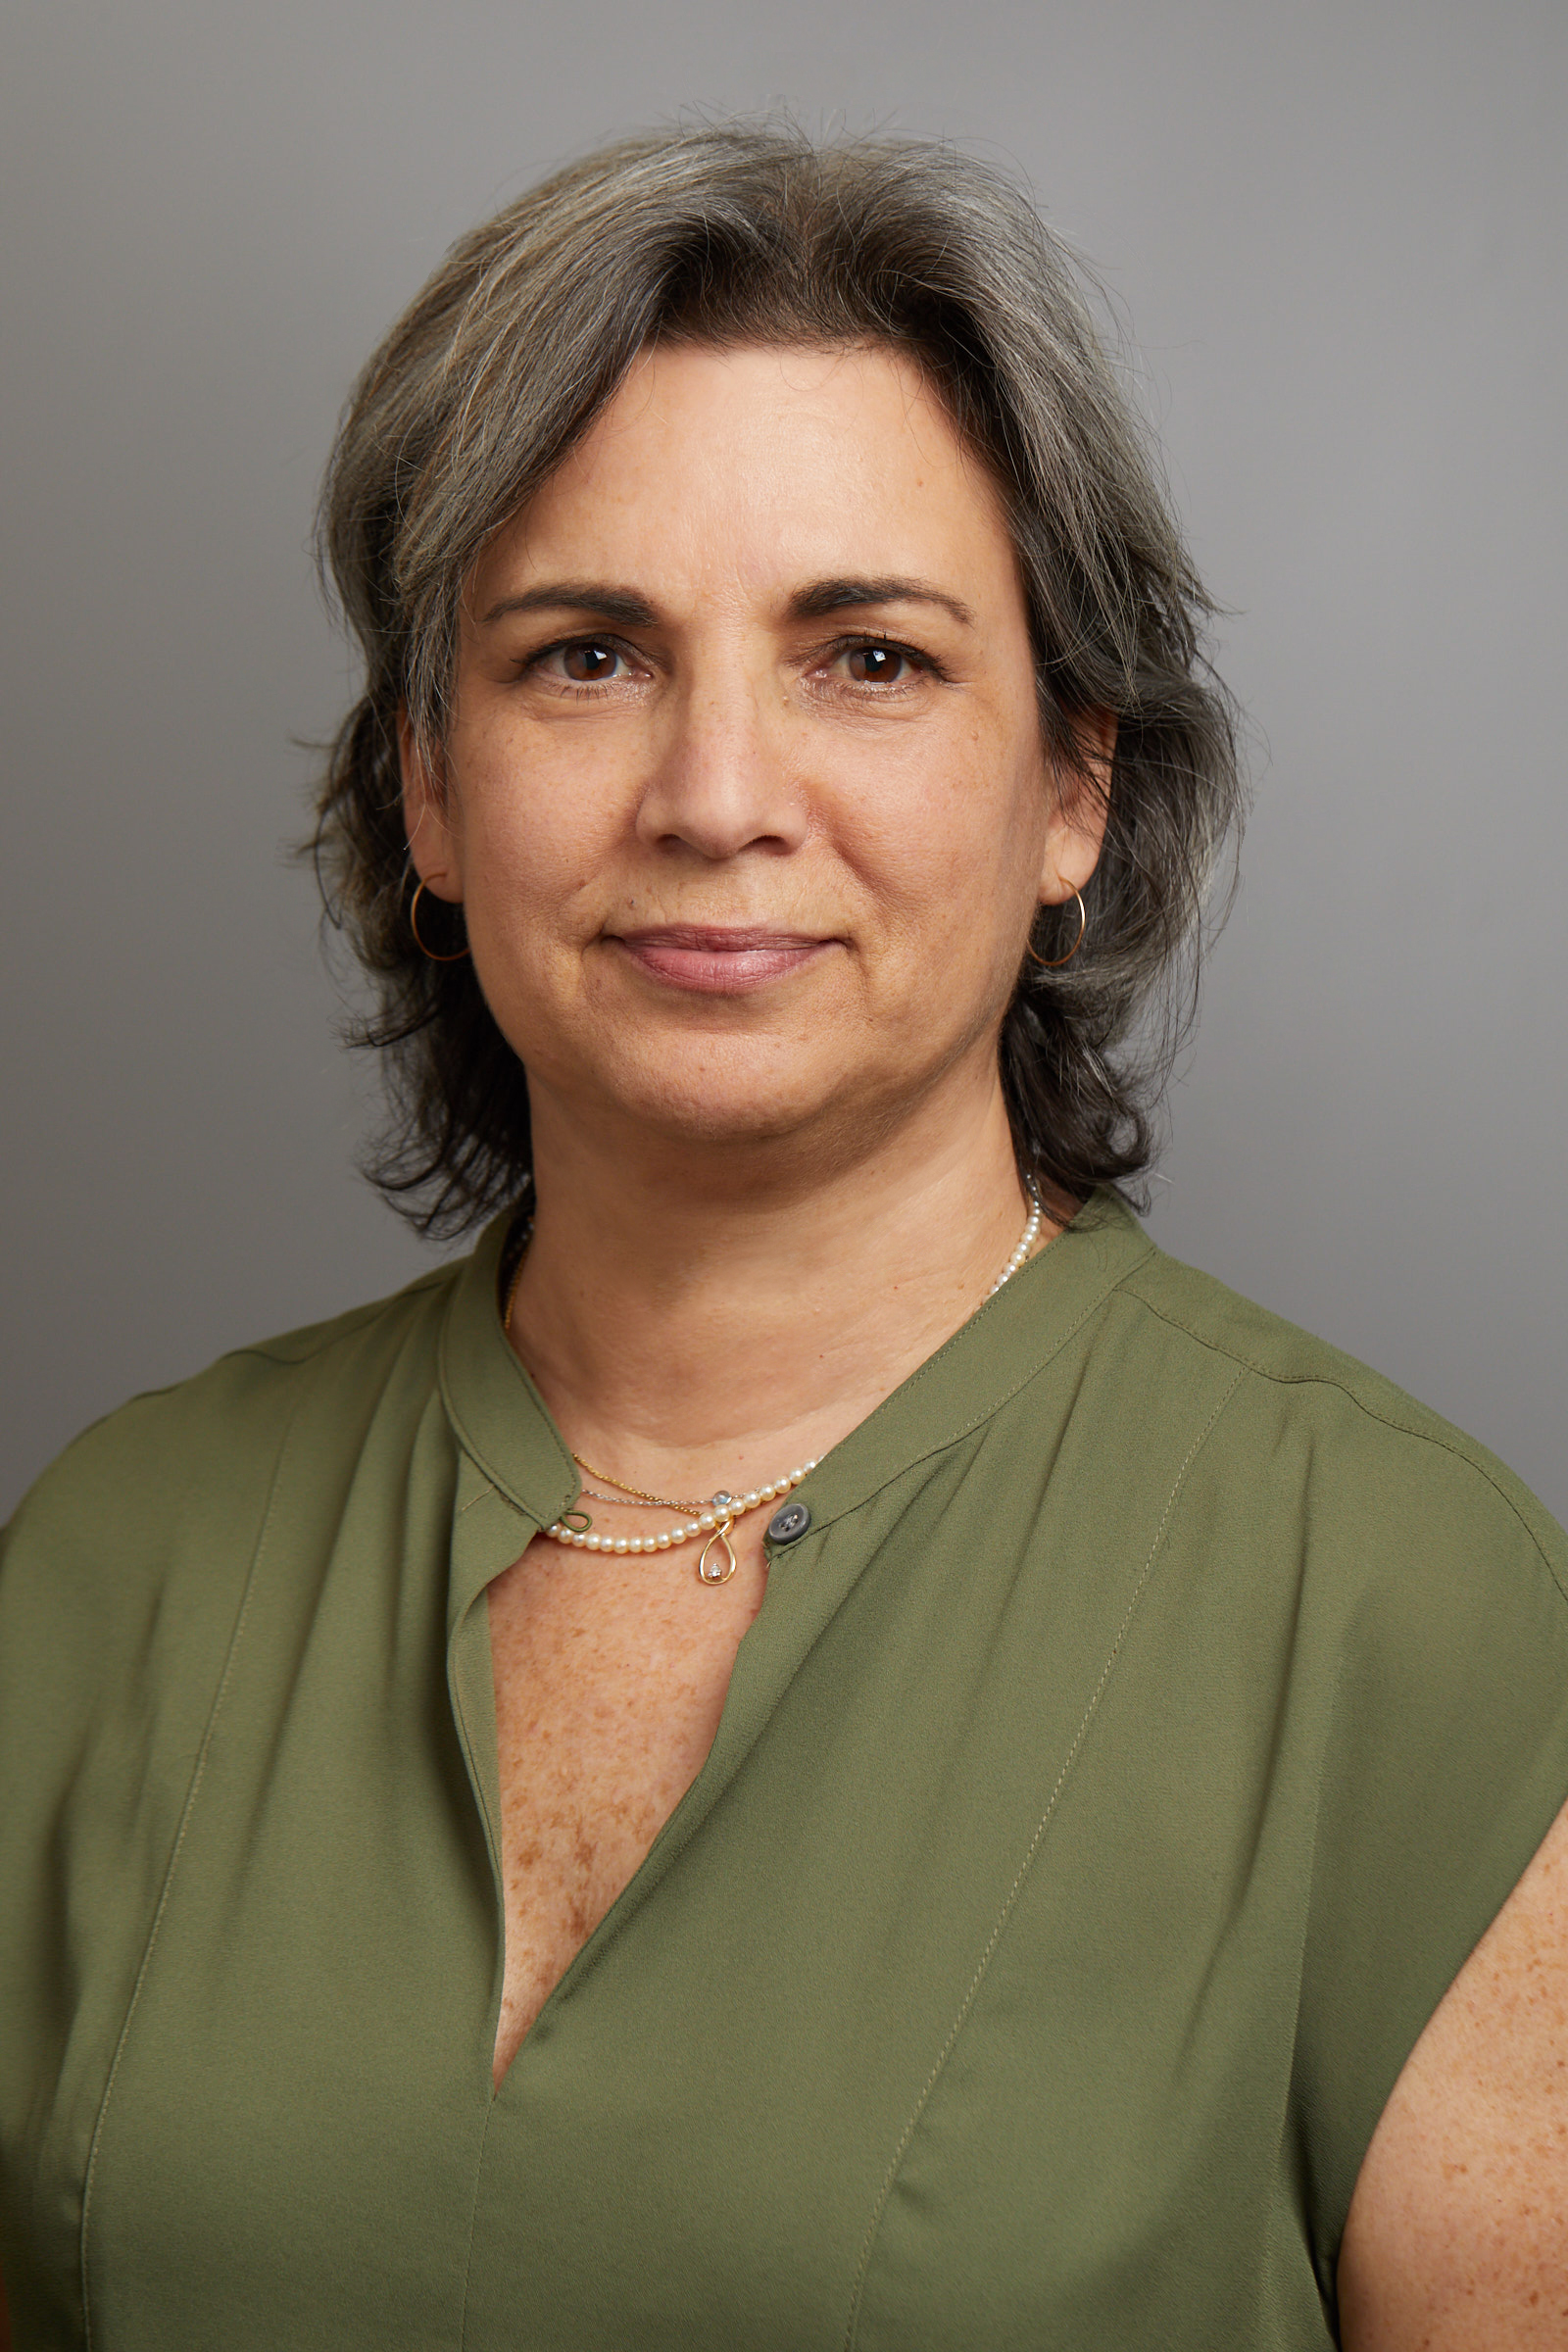 Dr. Nina Stachenfeld